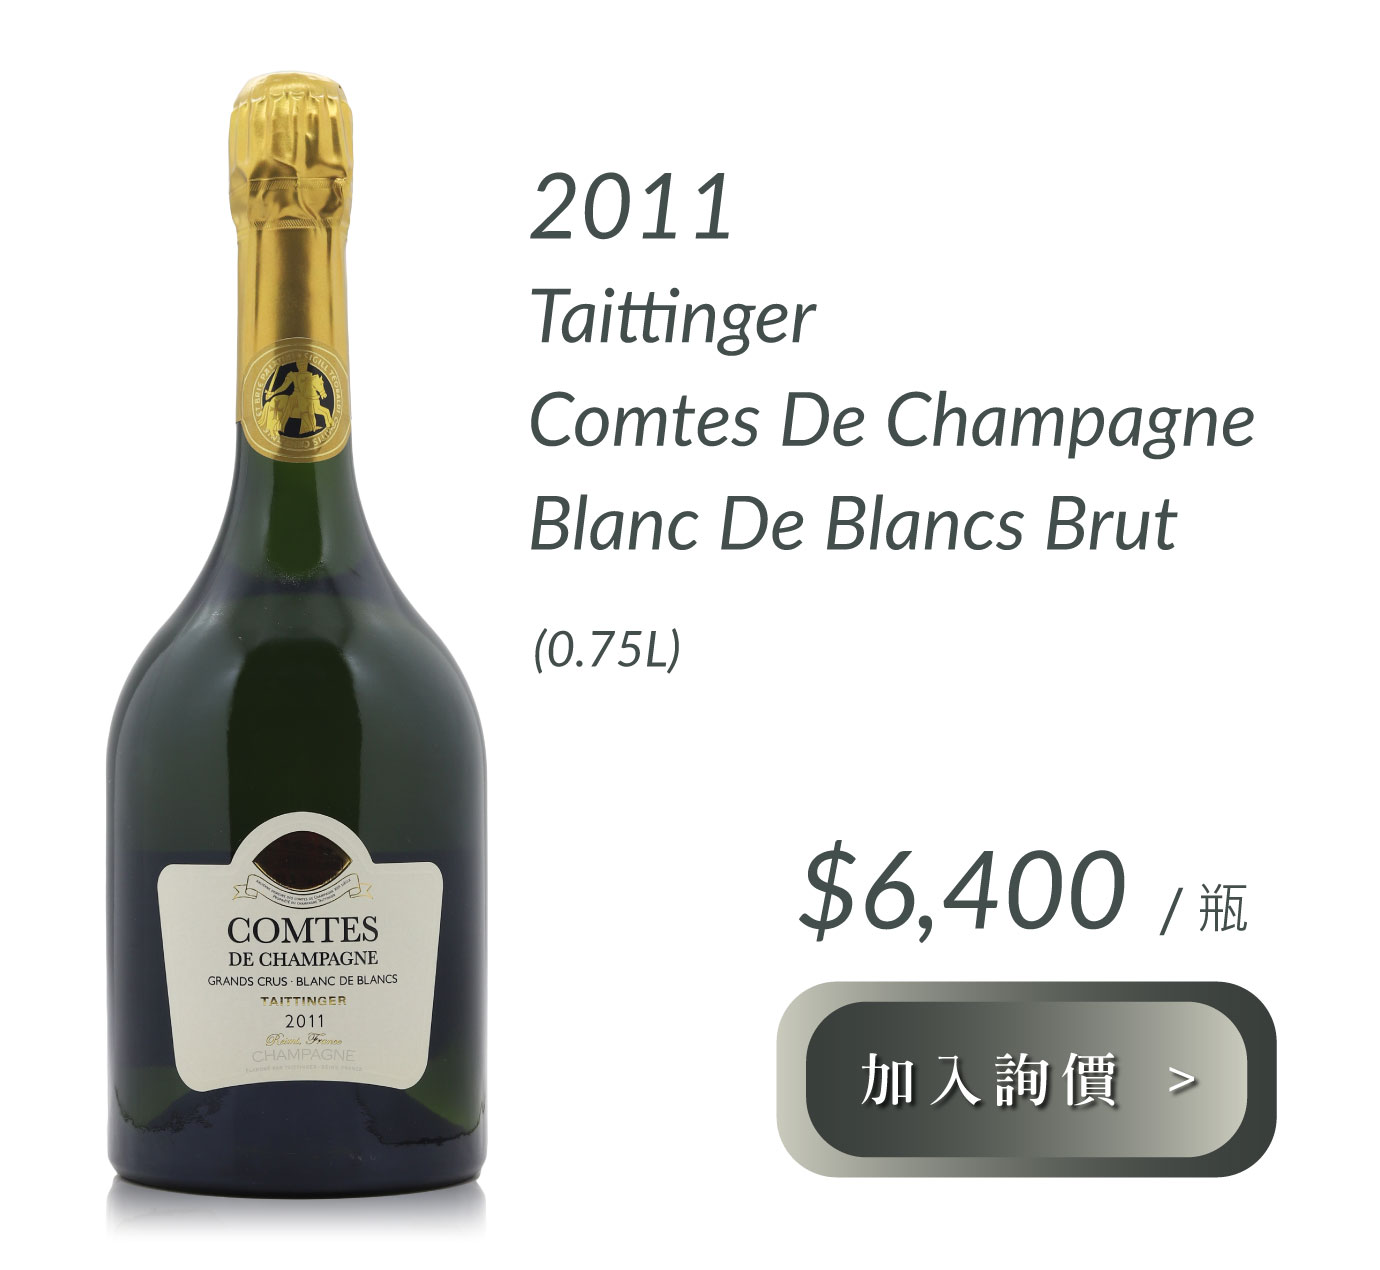 2011 Taittinger Comtes de Champagne Blanc de Blancs Brut